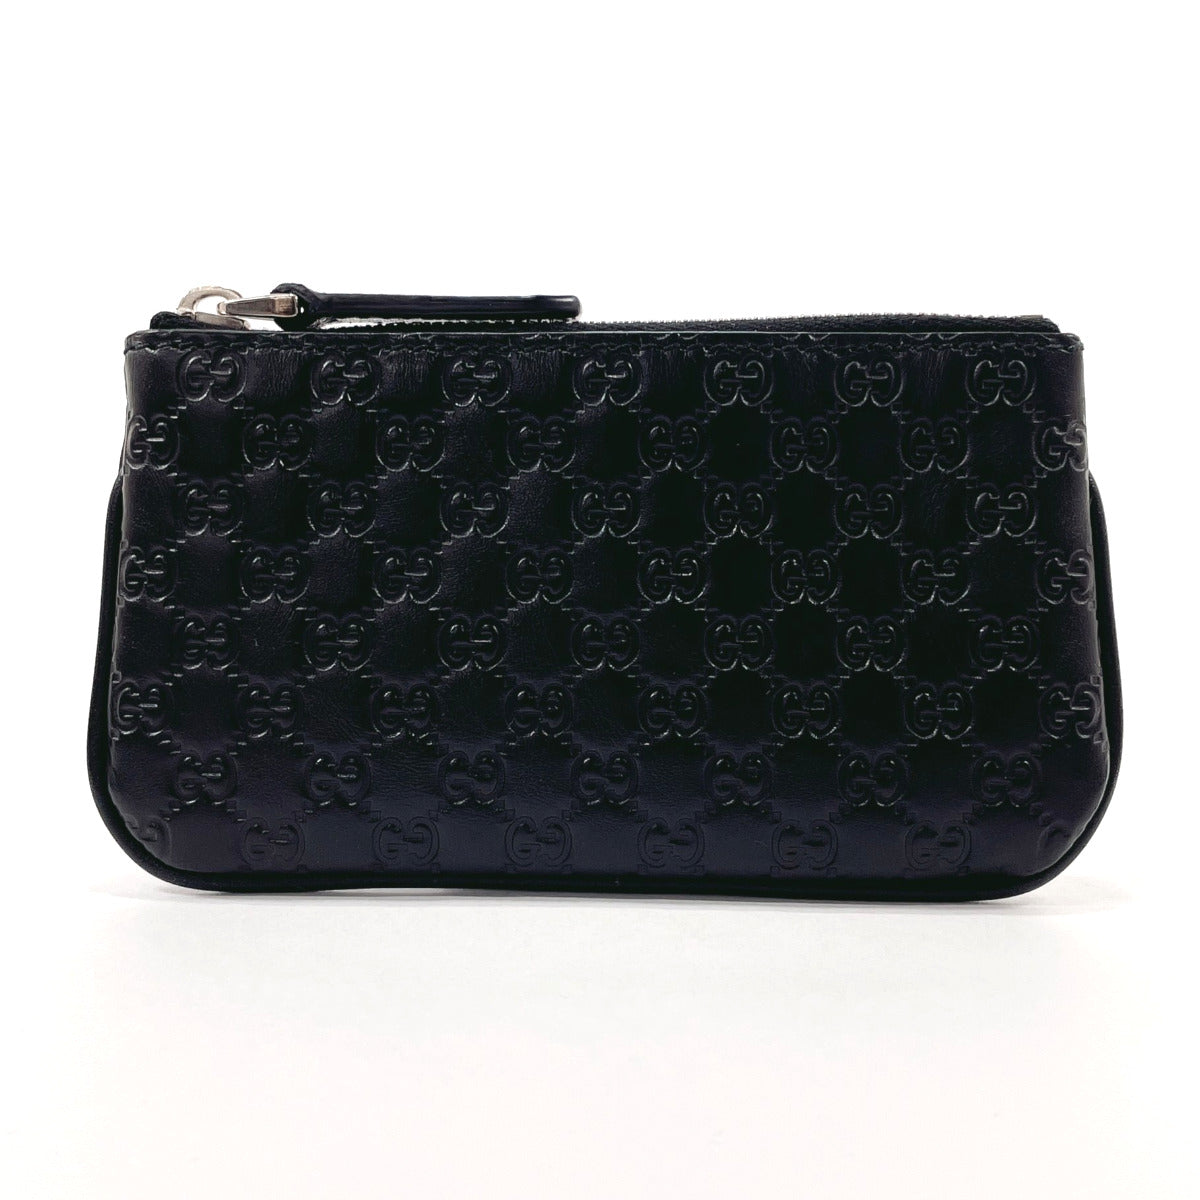 GUCCI coin purse 544476 Micro Guccisima Sima leather Black mens Used ...